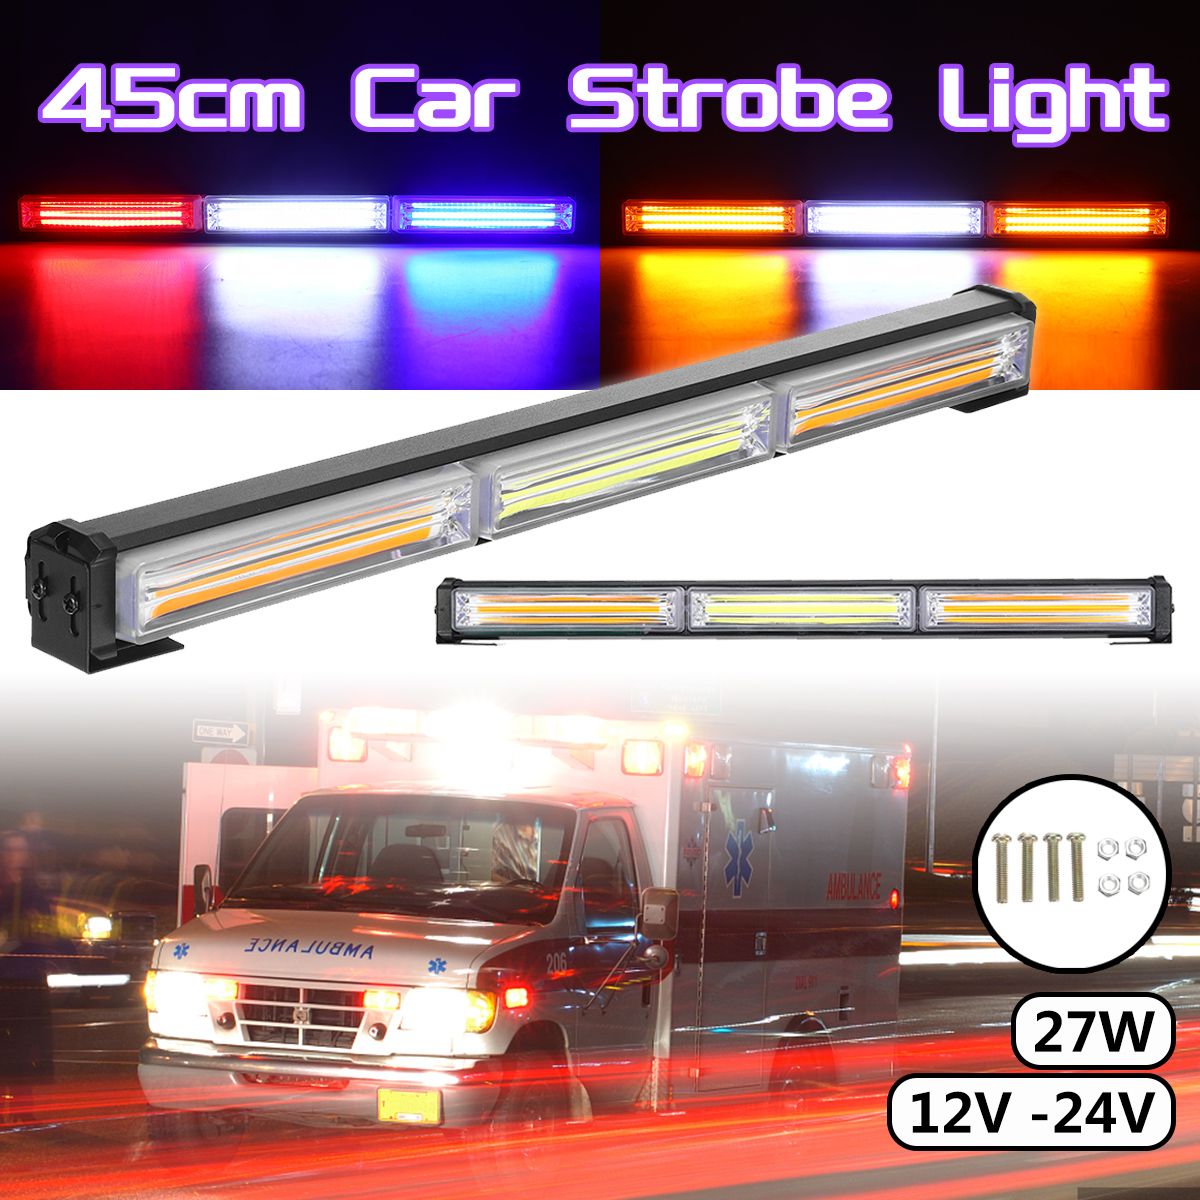 45cm-3-Section-Single-sided-Car-Flashing-Led-Light-COB-Engineering-Vehicle-Warning-Ceiling-Bar-Light-1702888